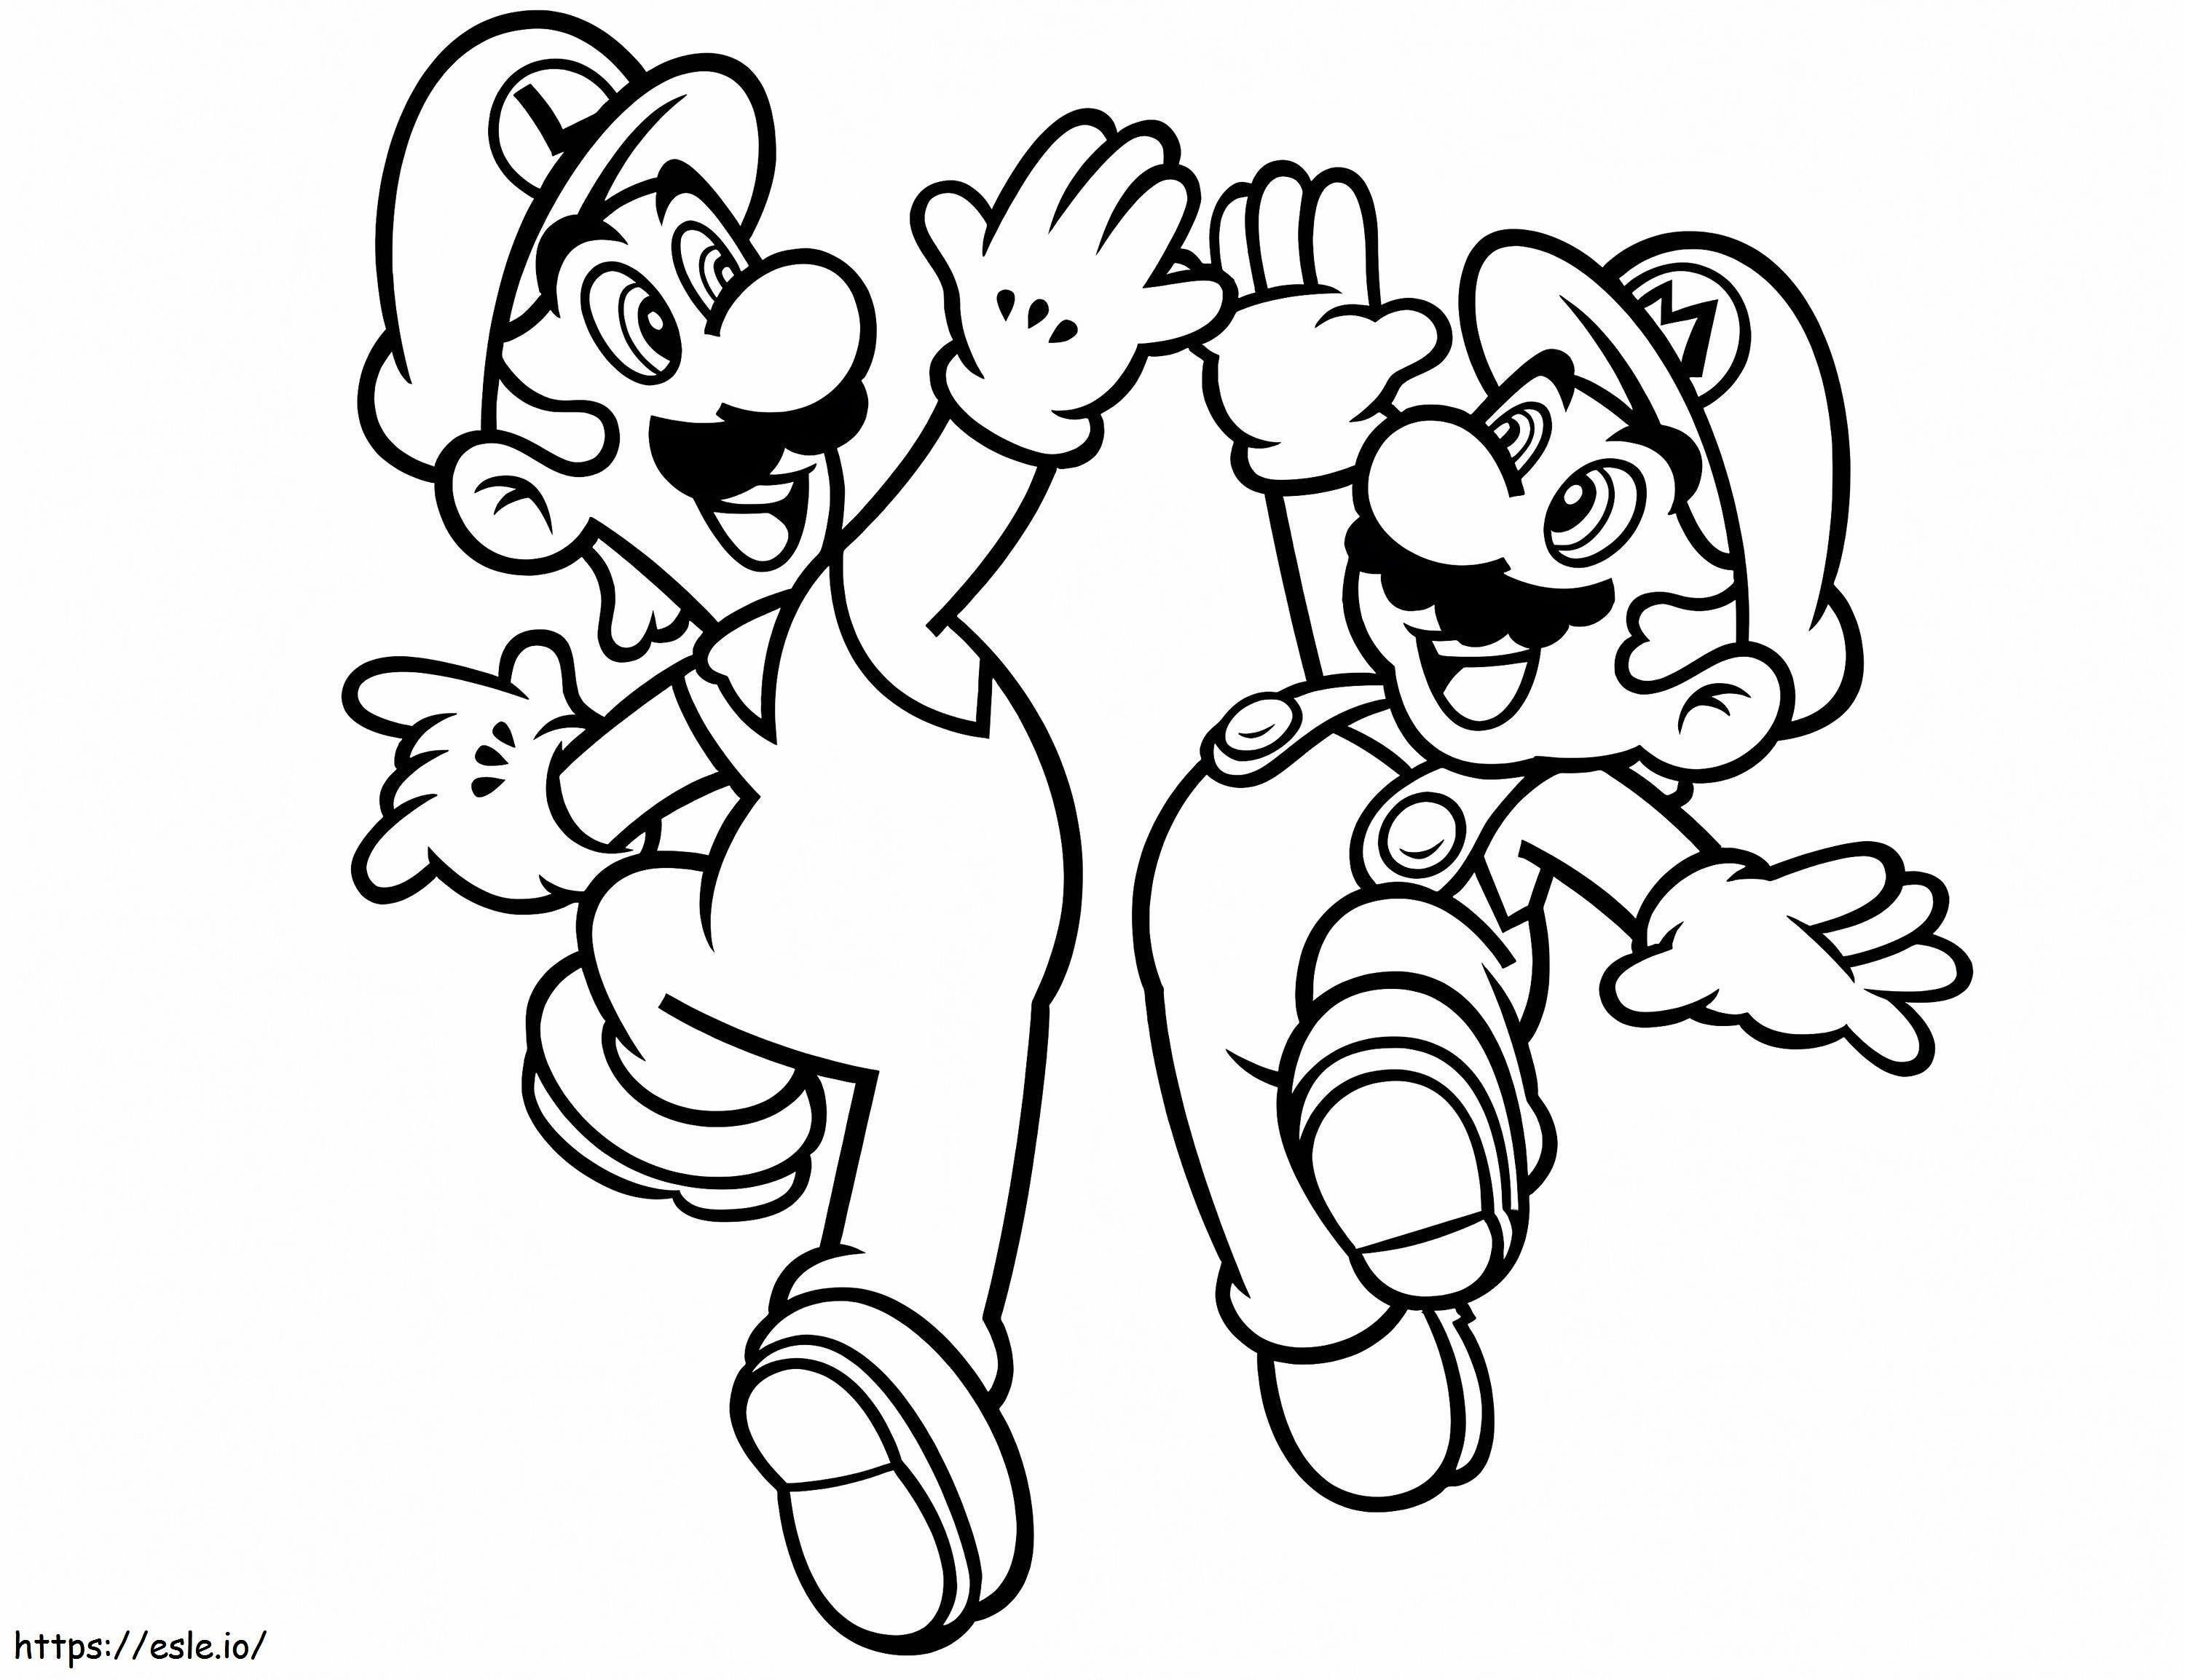 Luigi And Mario coloring page